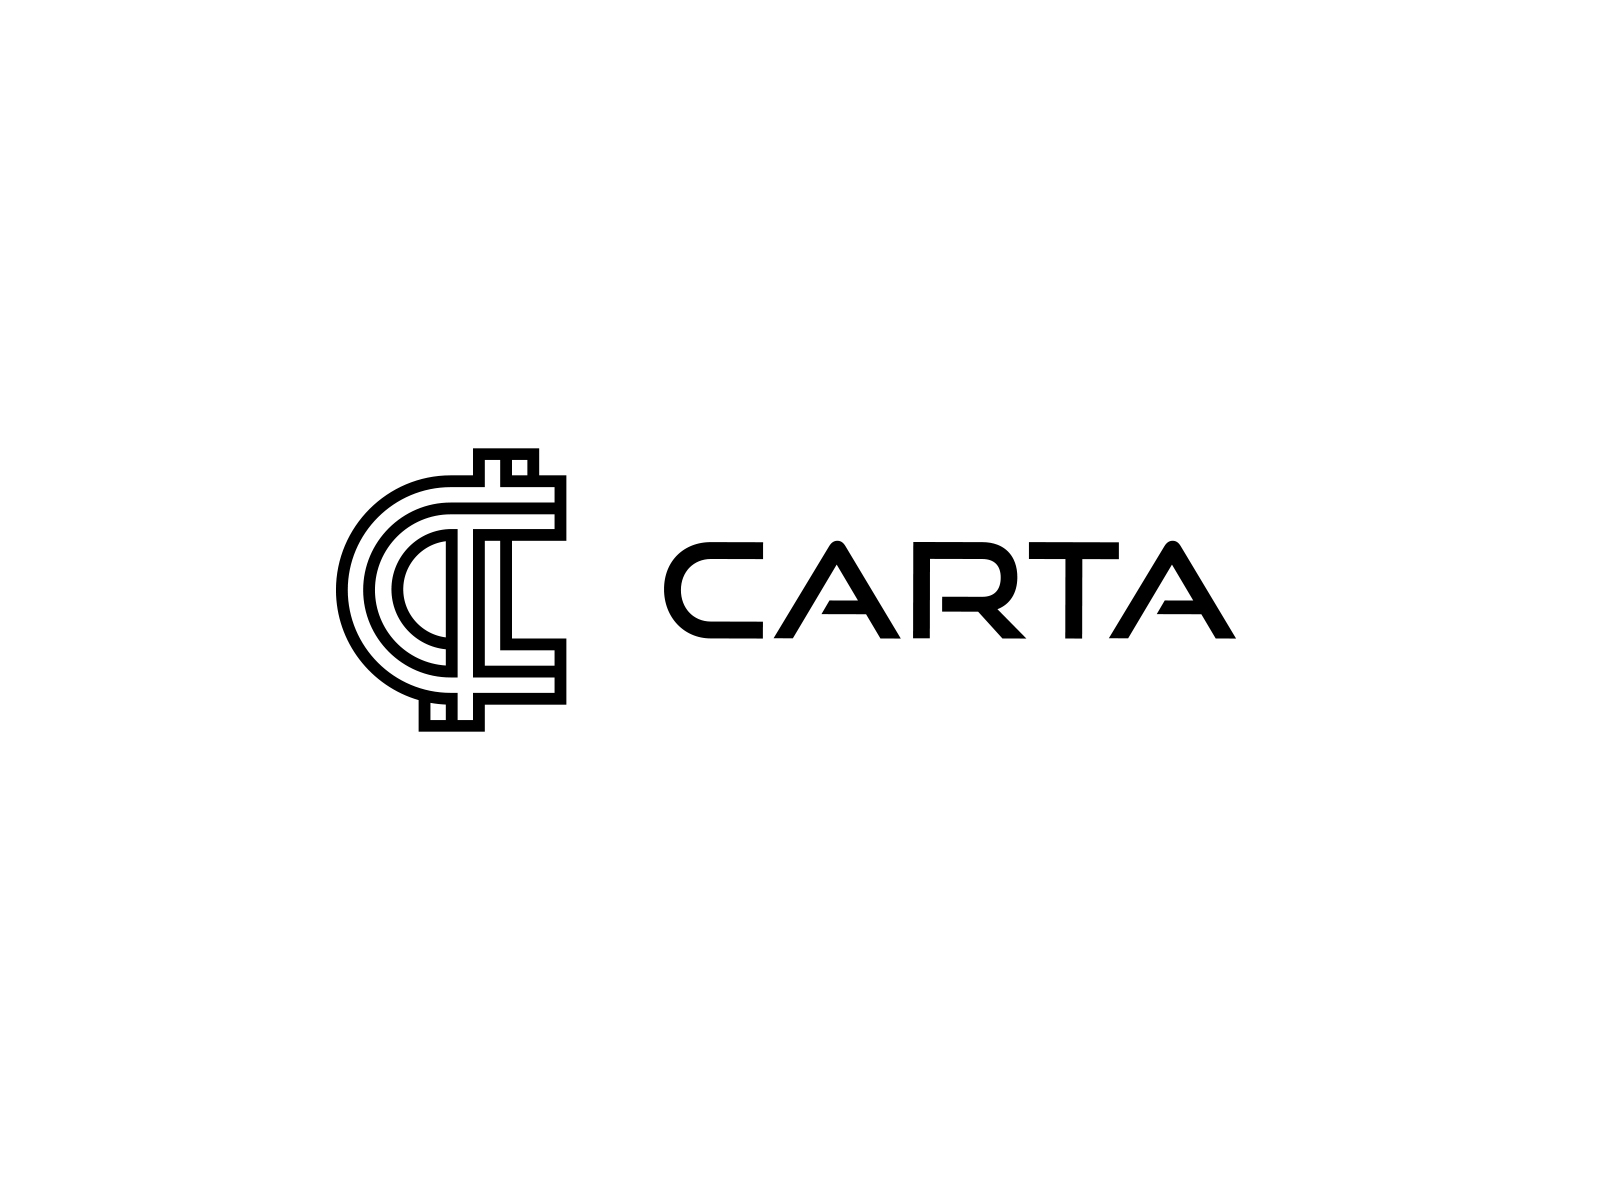 Carta logo